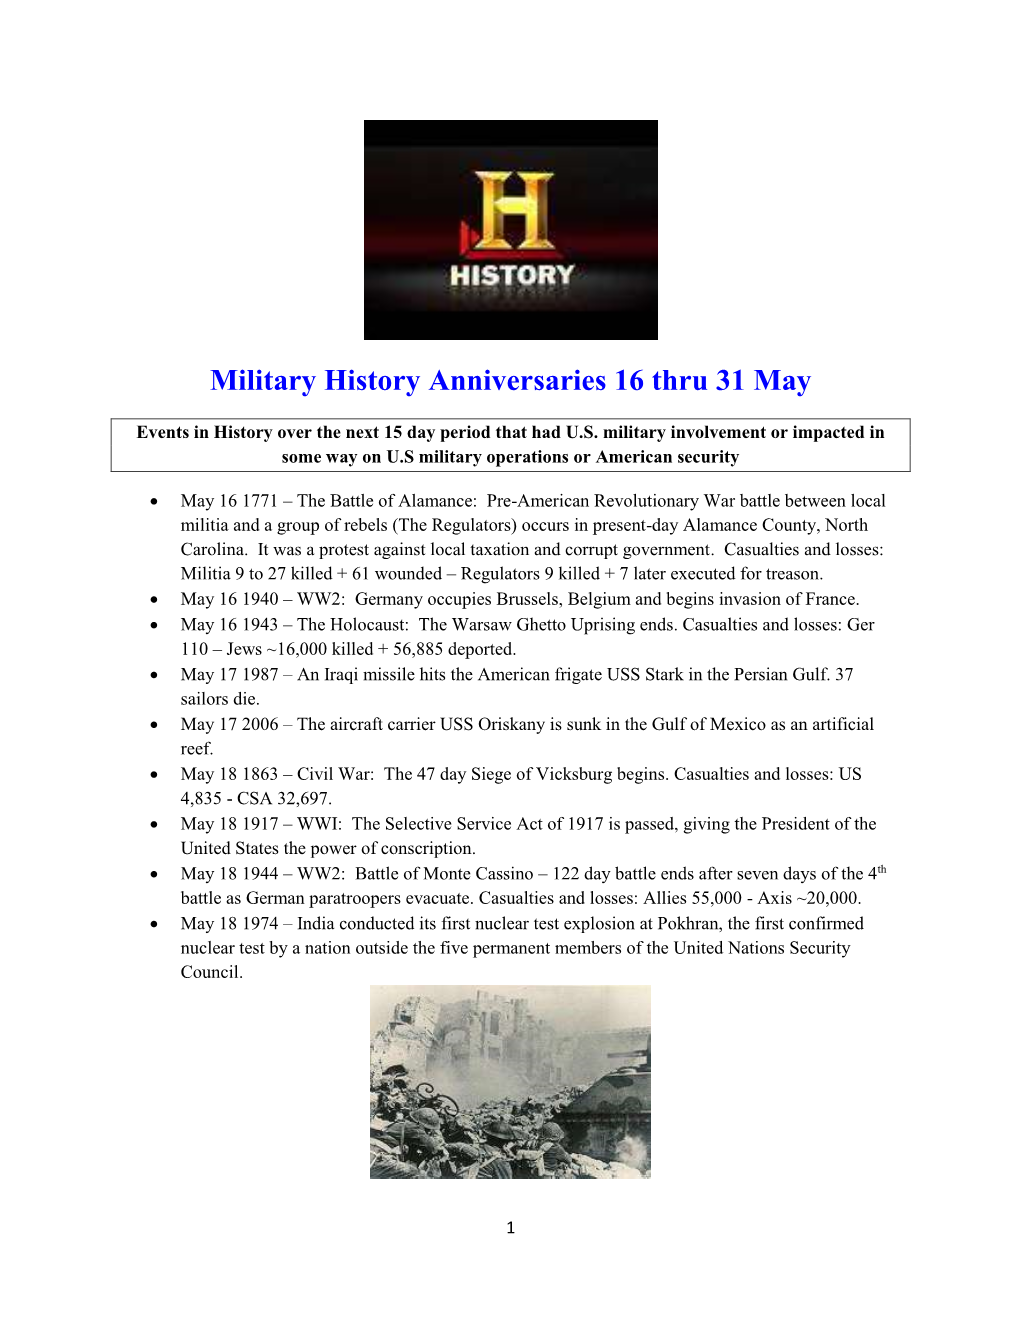 Military History Anniversaries 0516 Thru 053116